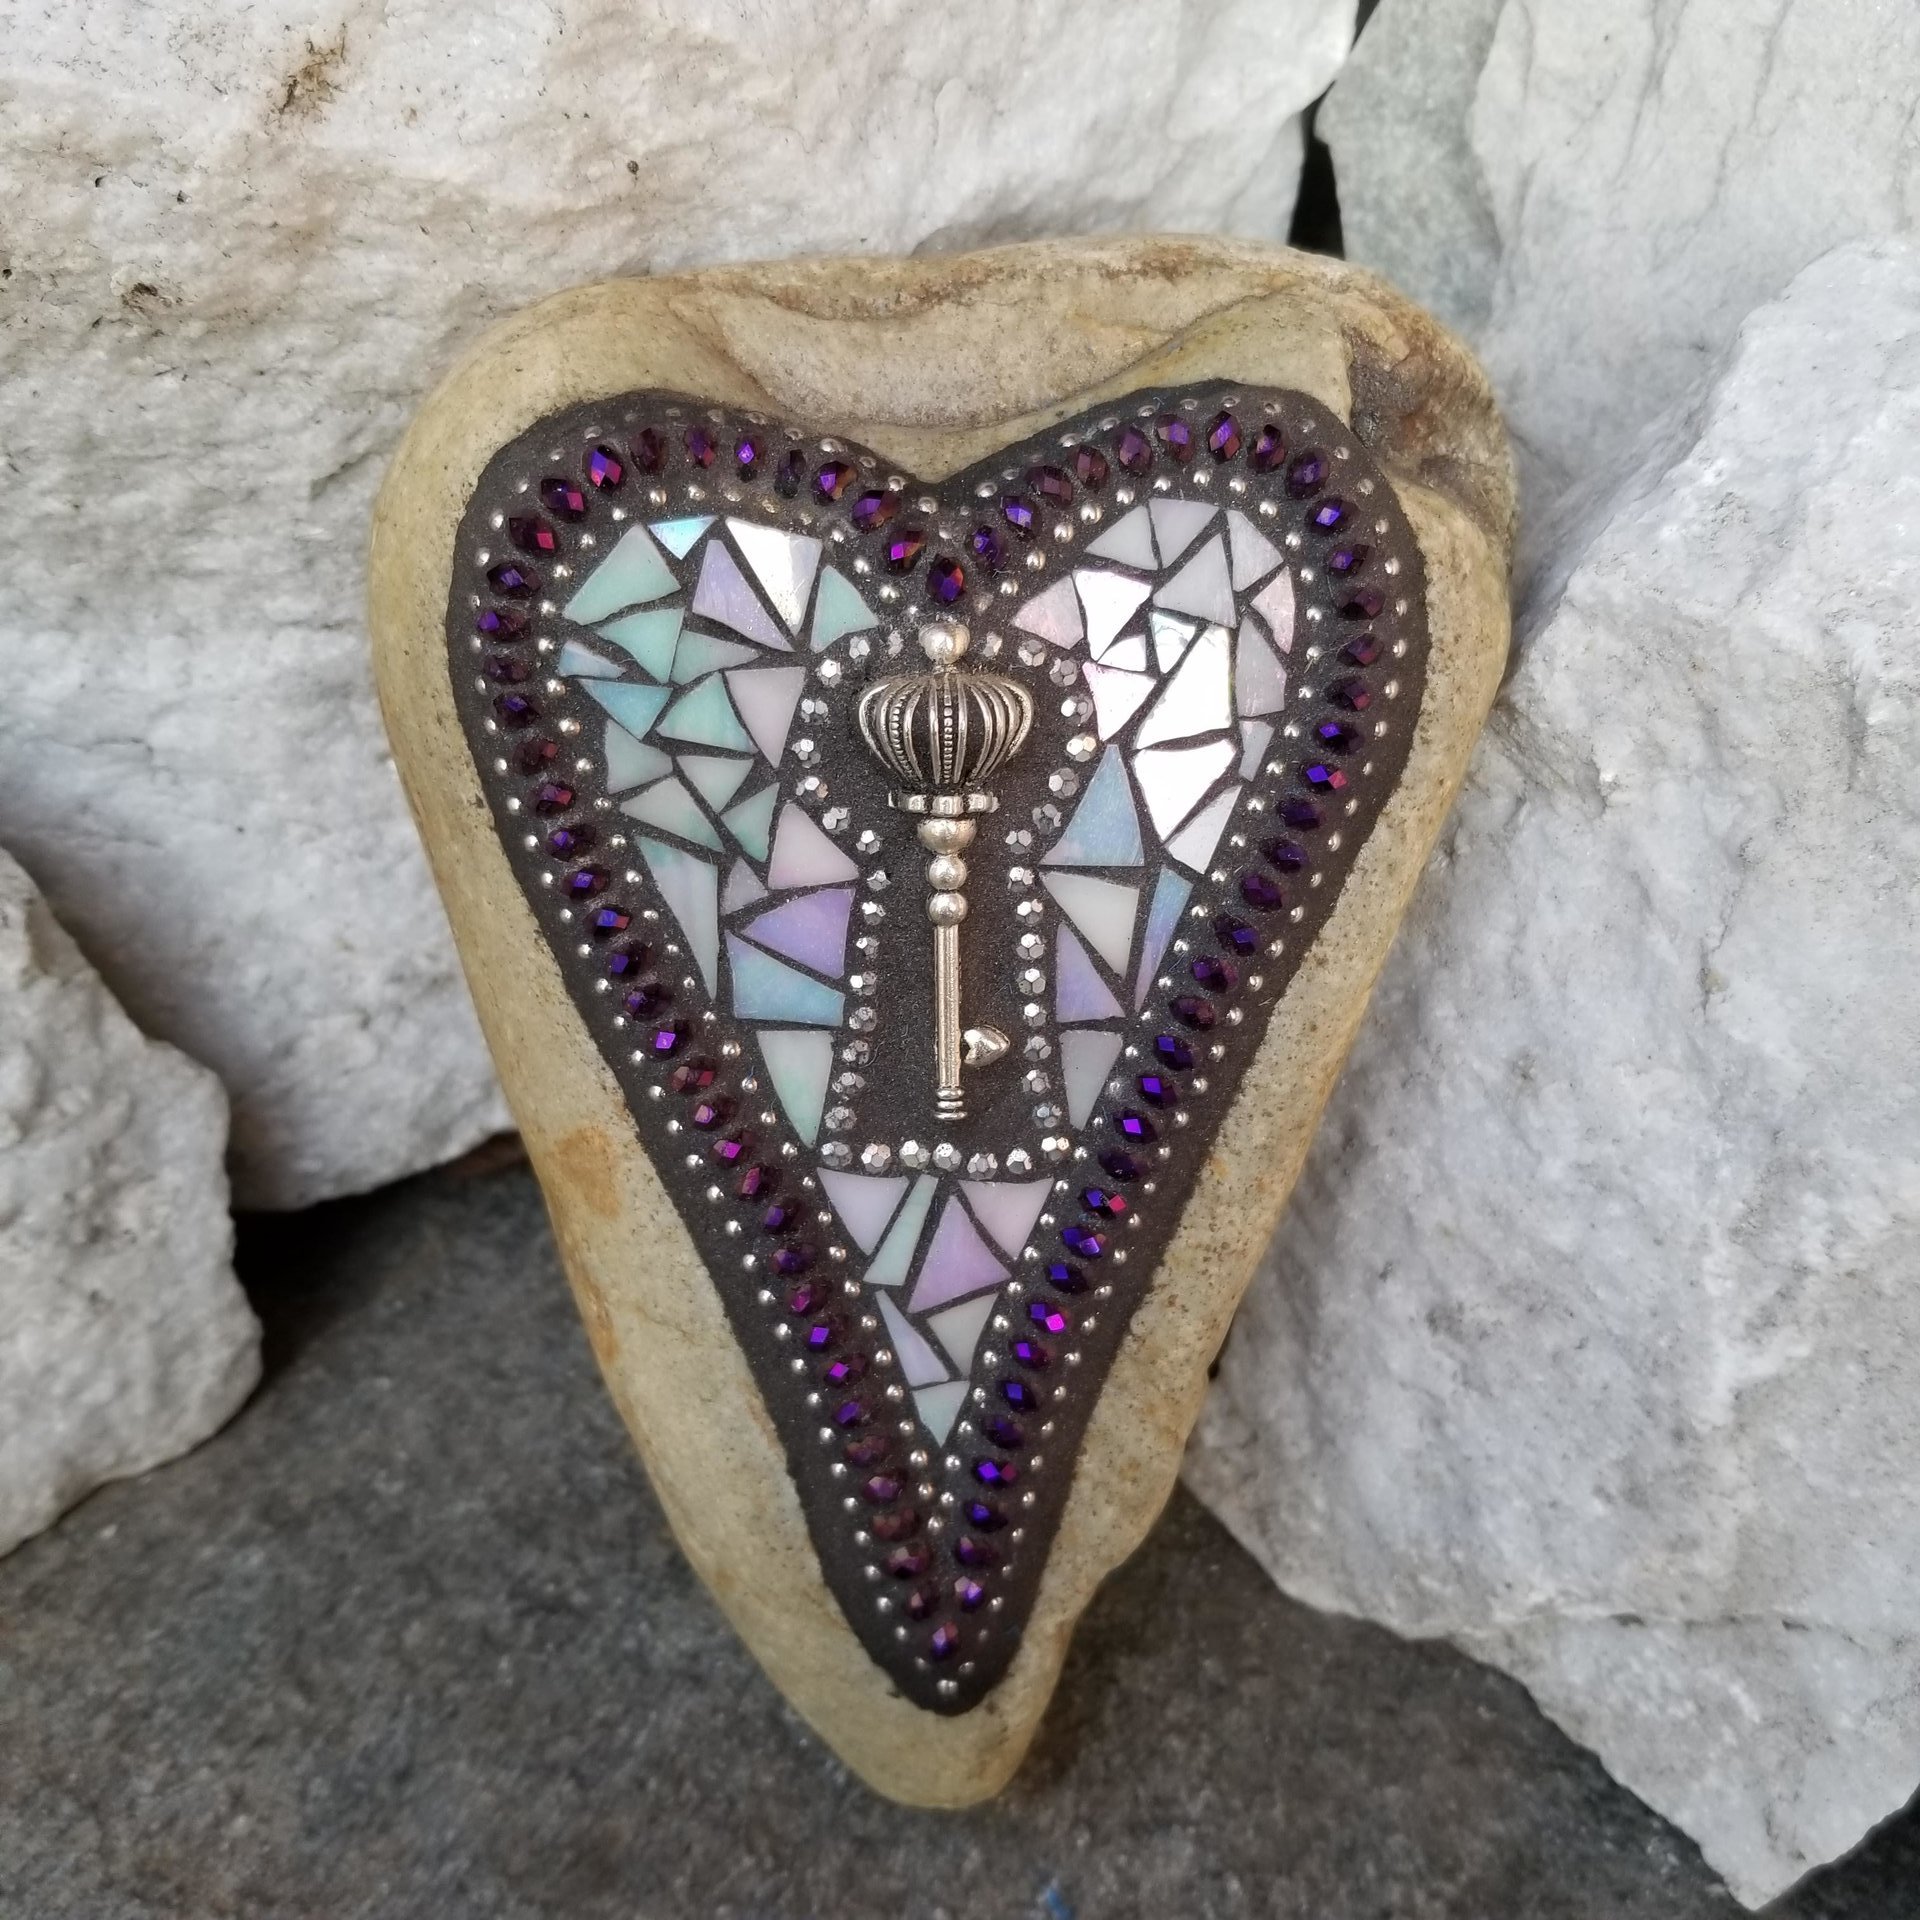 Key Heart, Mosaic, Garden Stone,  Gardener Gift, Home Decor, Garden Decor